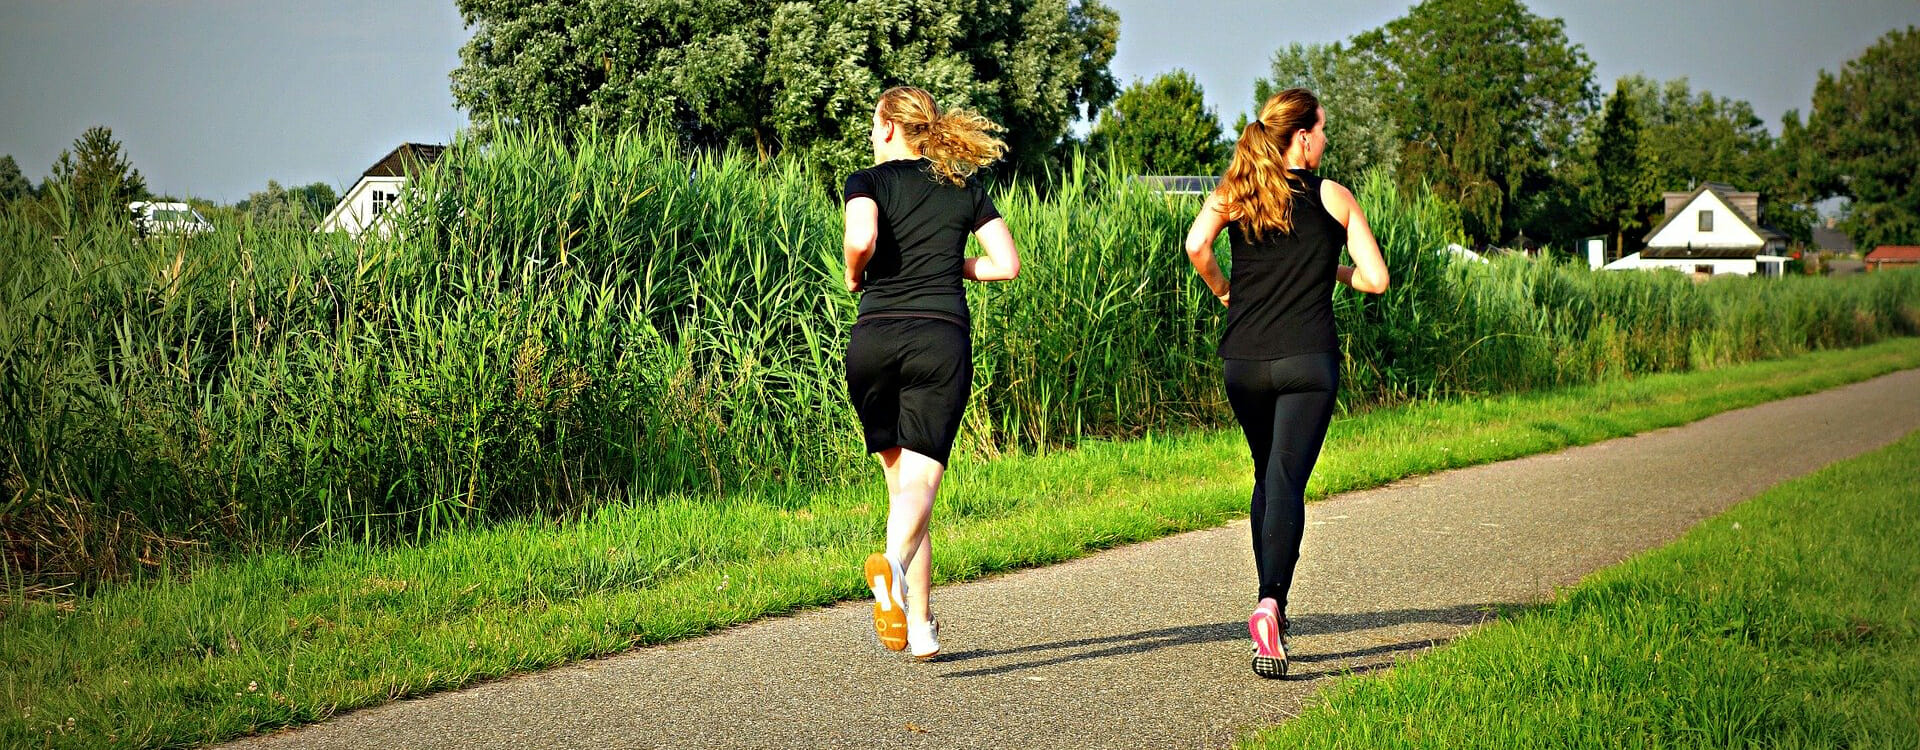 Joggen für Anfänger - Zwei joggende Frauen im Park.